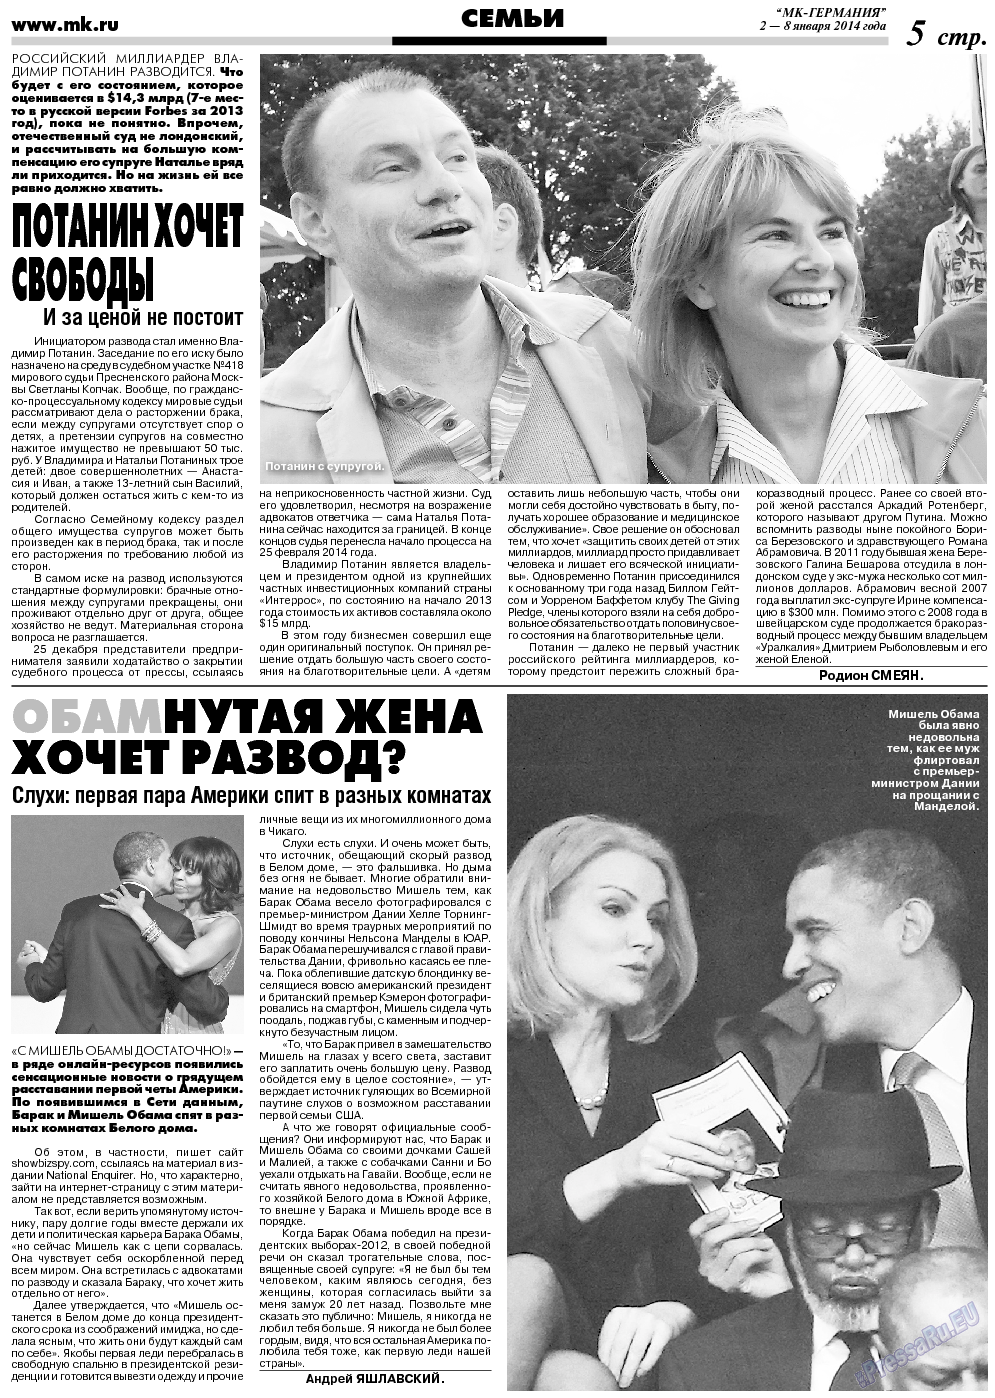 МК-Германия (газета). 2014 год, номер 1, стр. 5